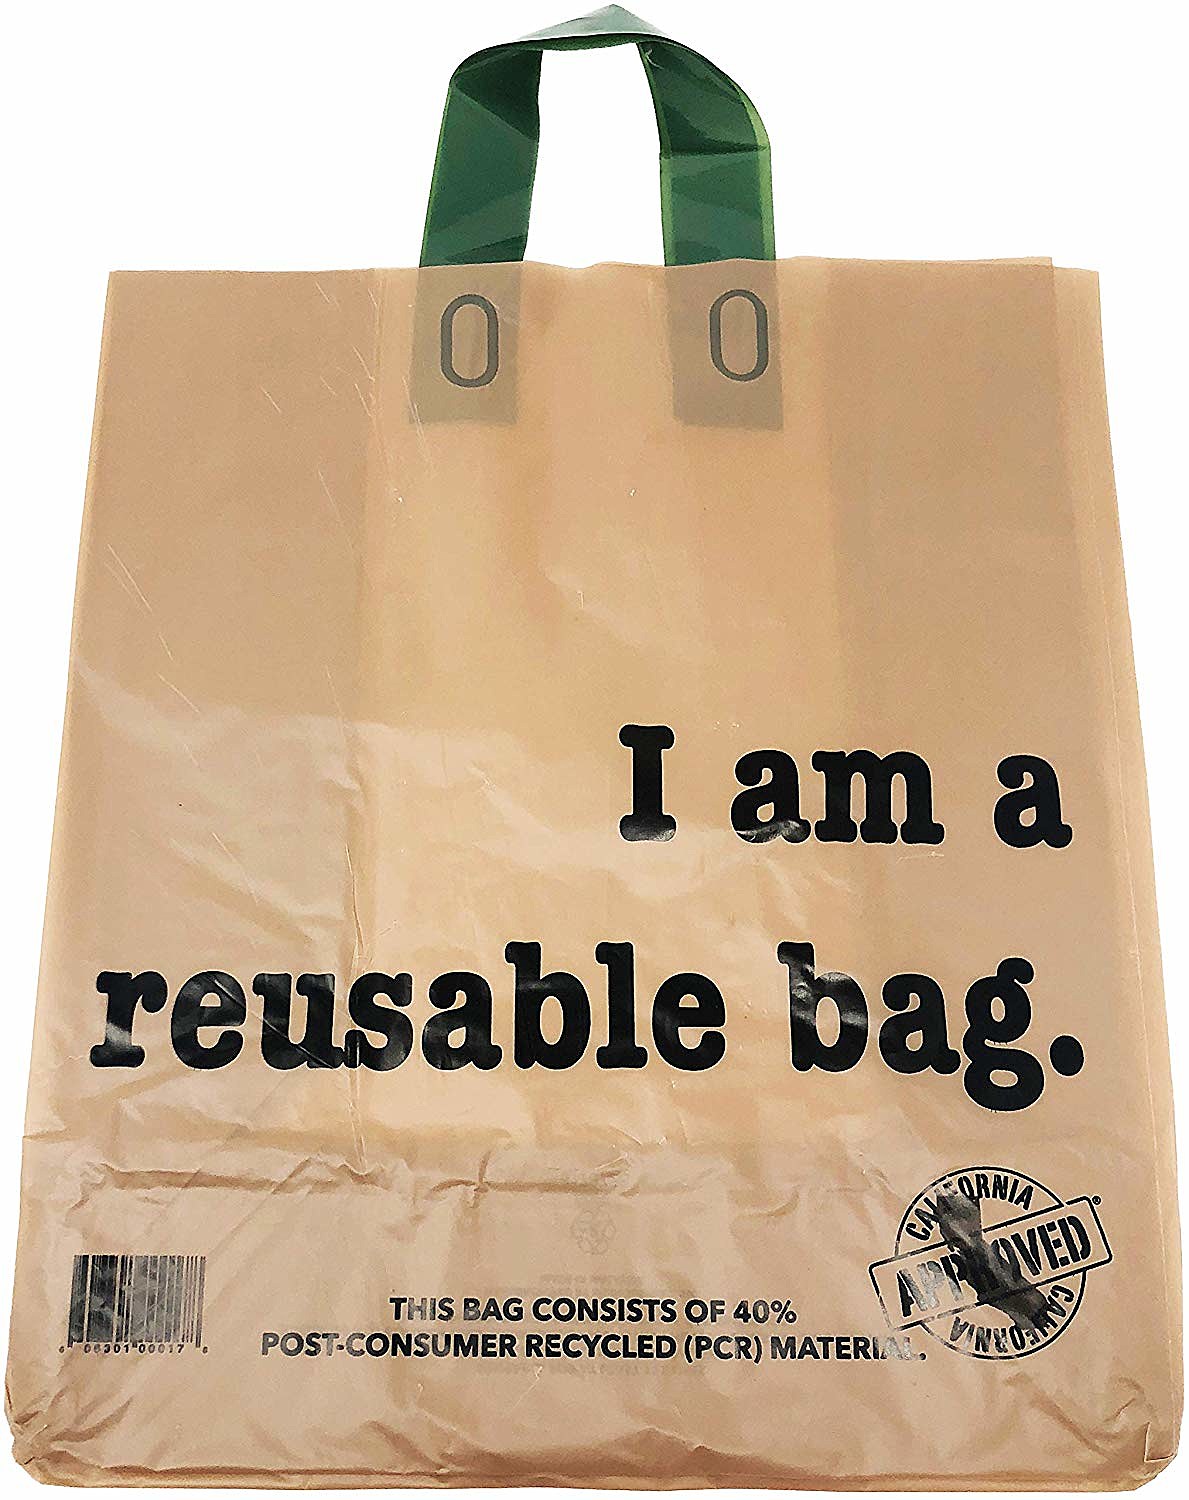 Single-use Plastic Bag Ban - WZOZ 103.1